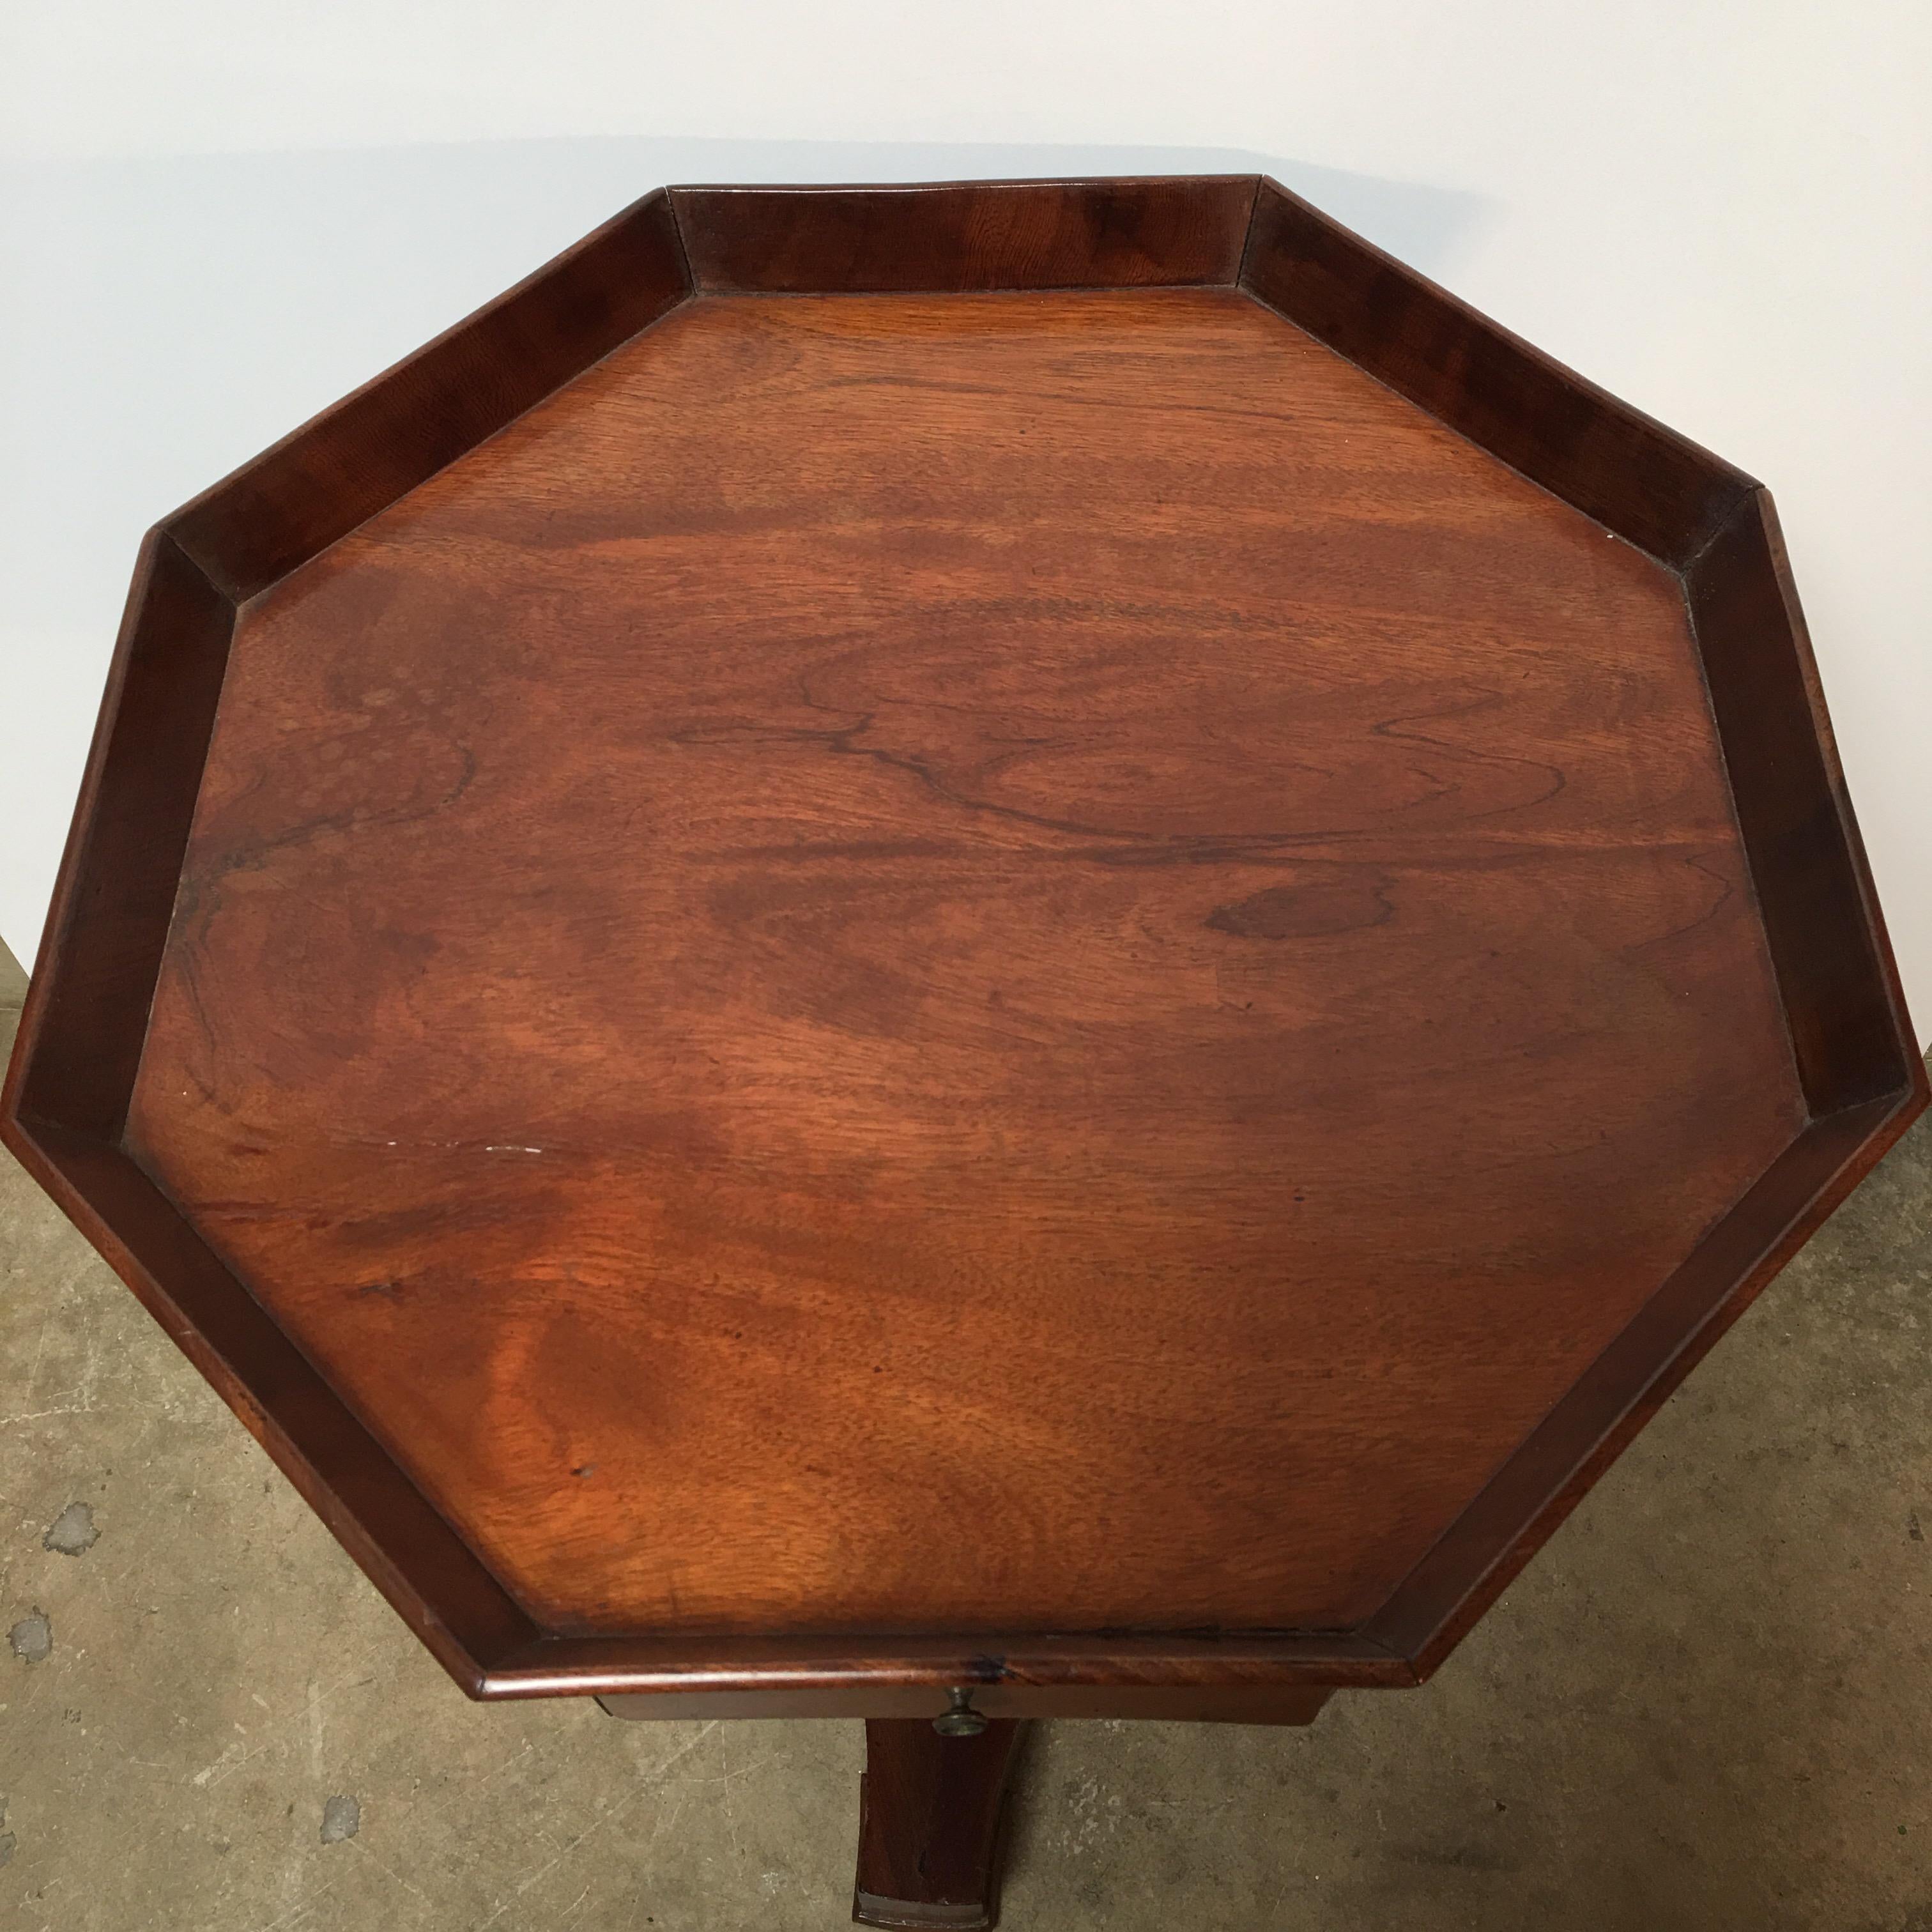 A French Empire style mahogany table.